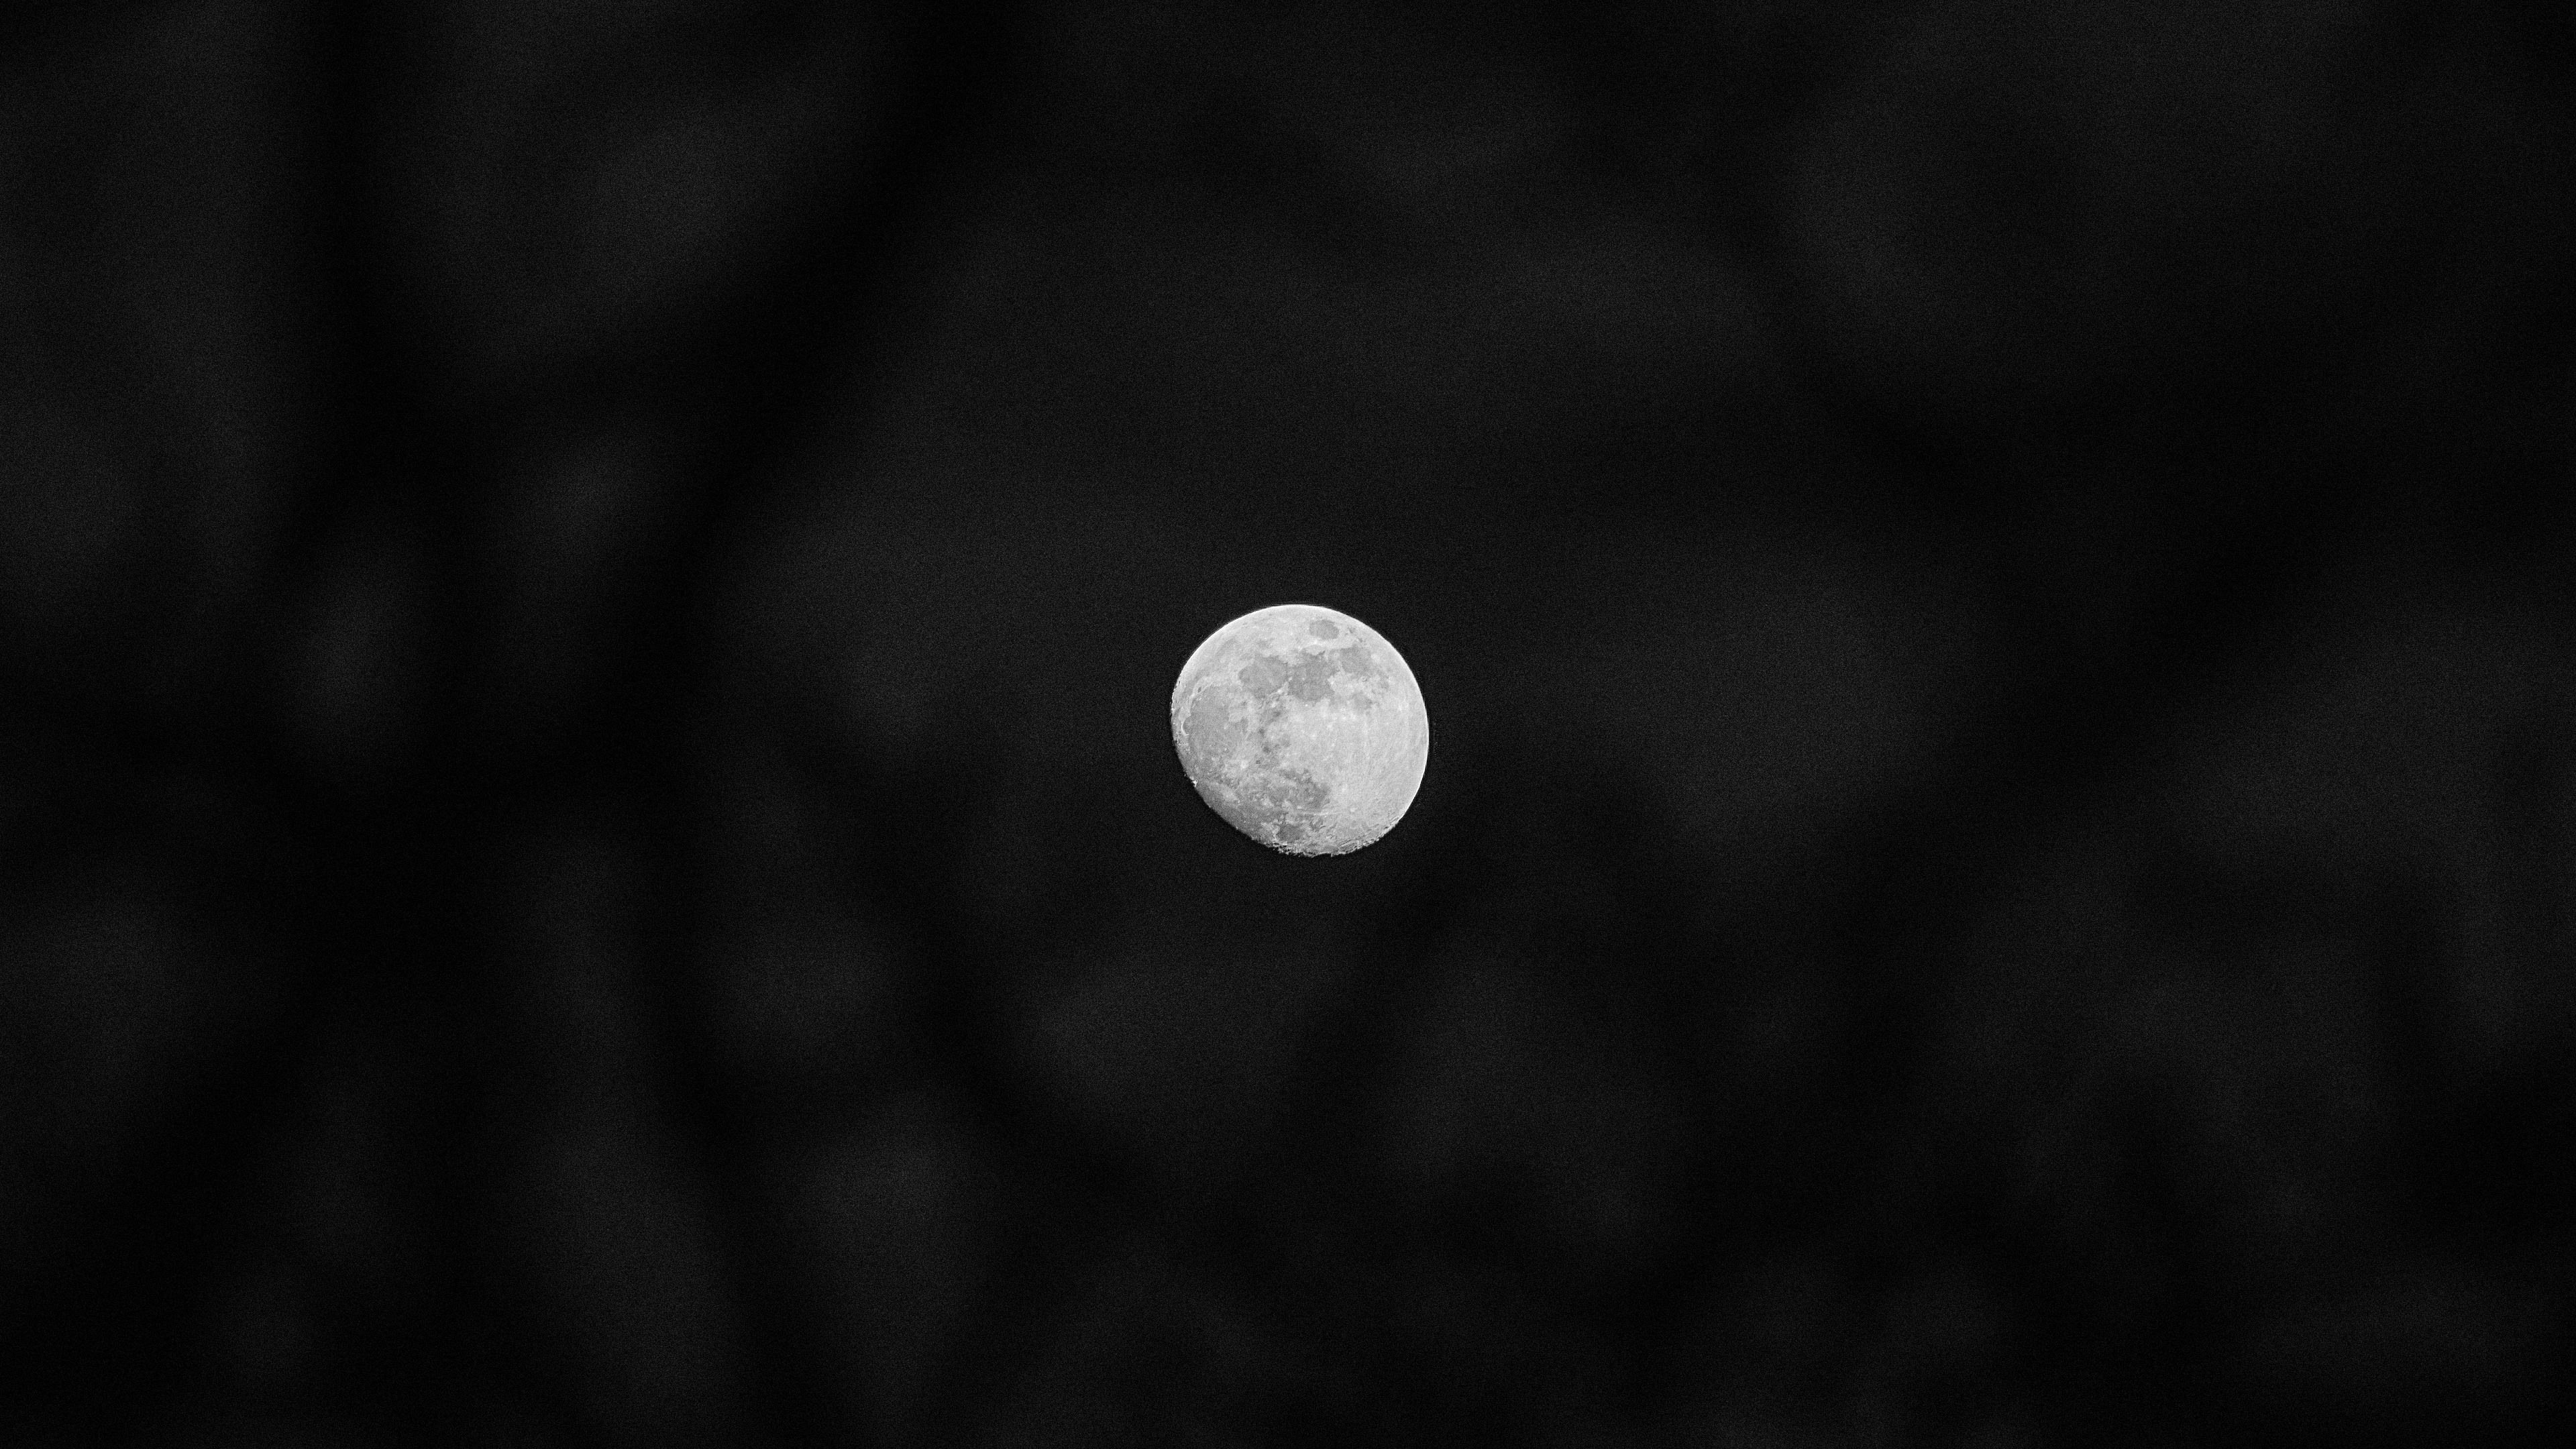 General 3840x2160 Moon night dark dark background black minimalism space